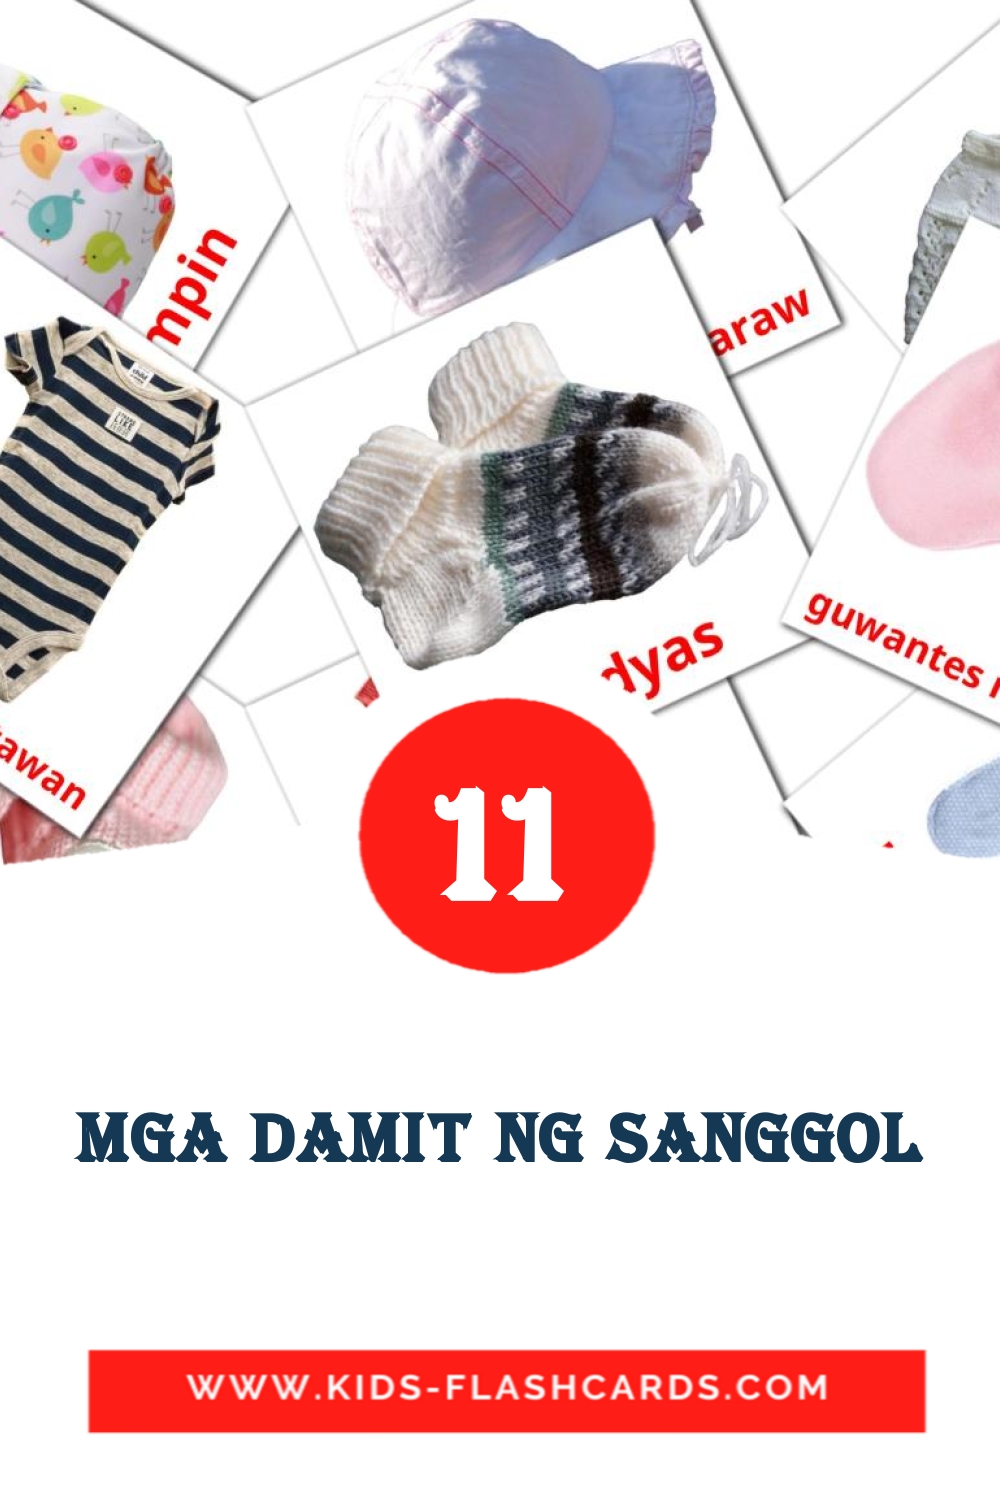 11 Mga damit ng sanggol fotokaarten voor kleuters in het filipino